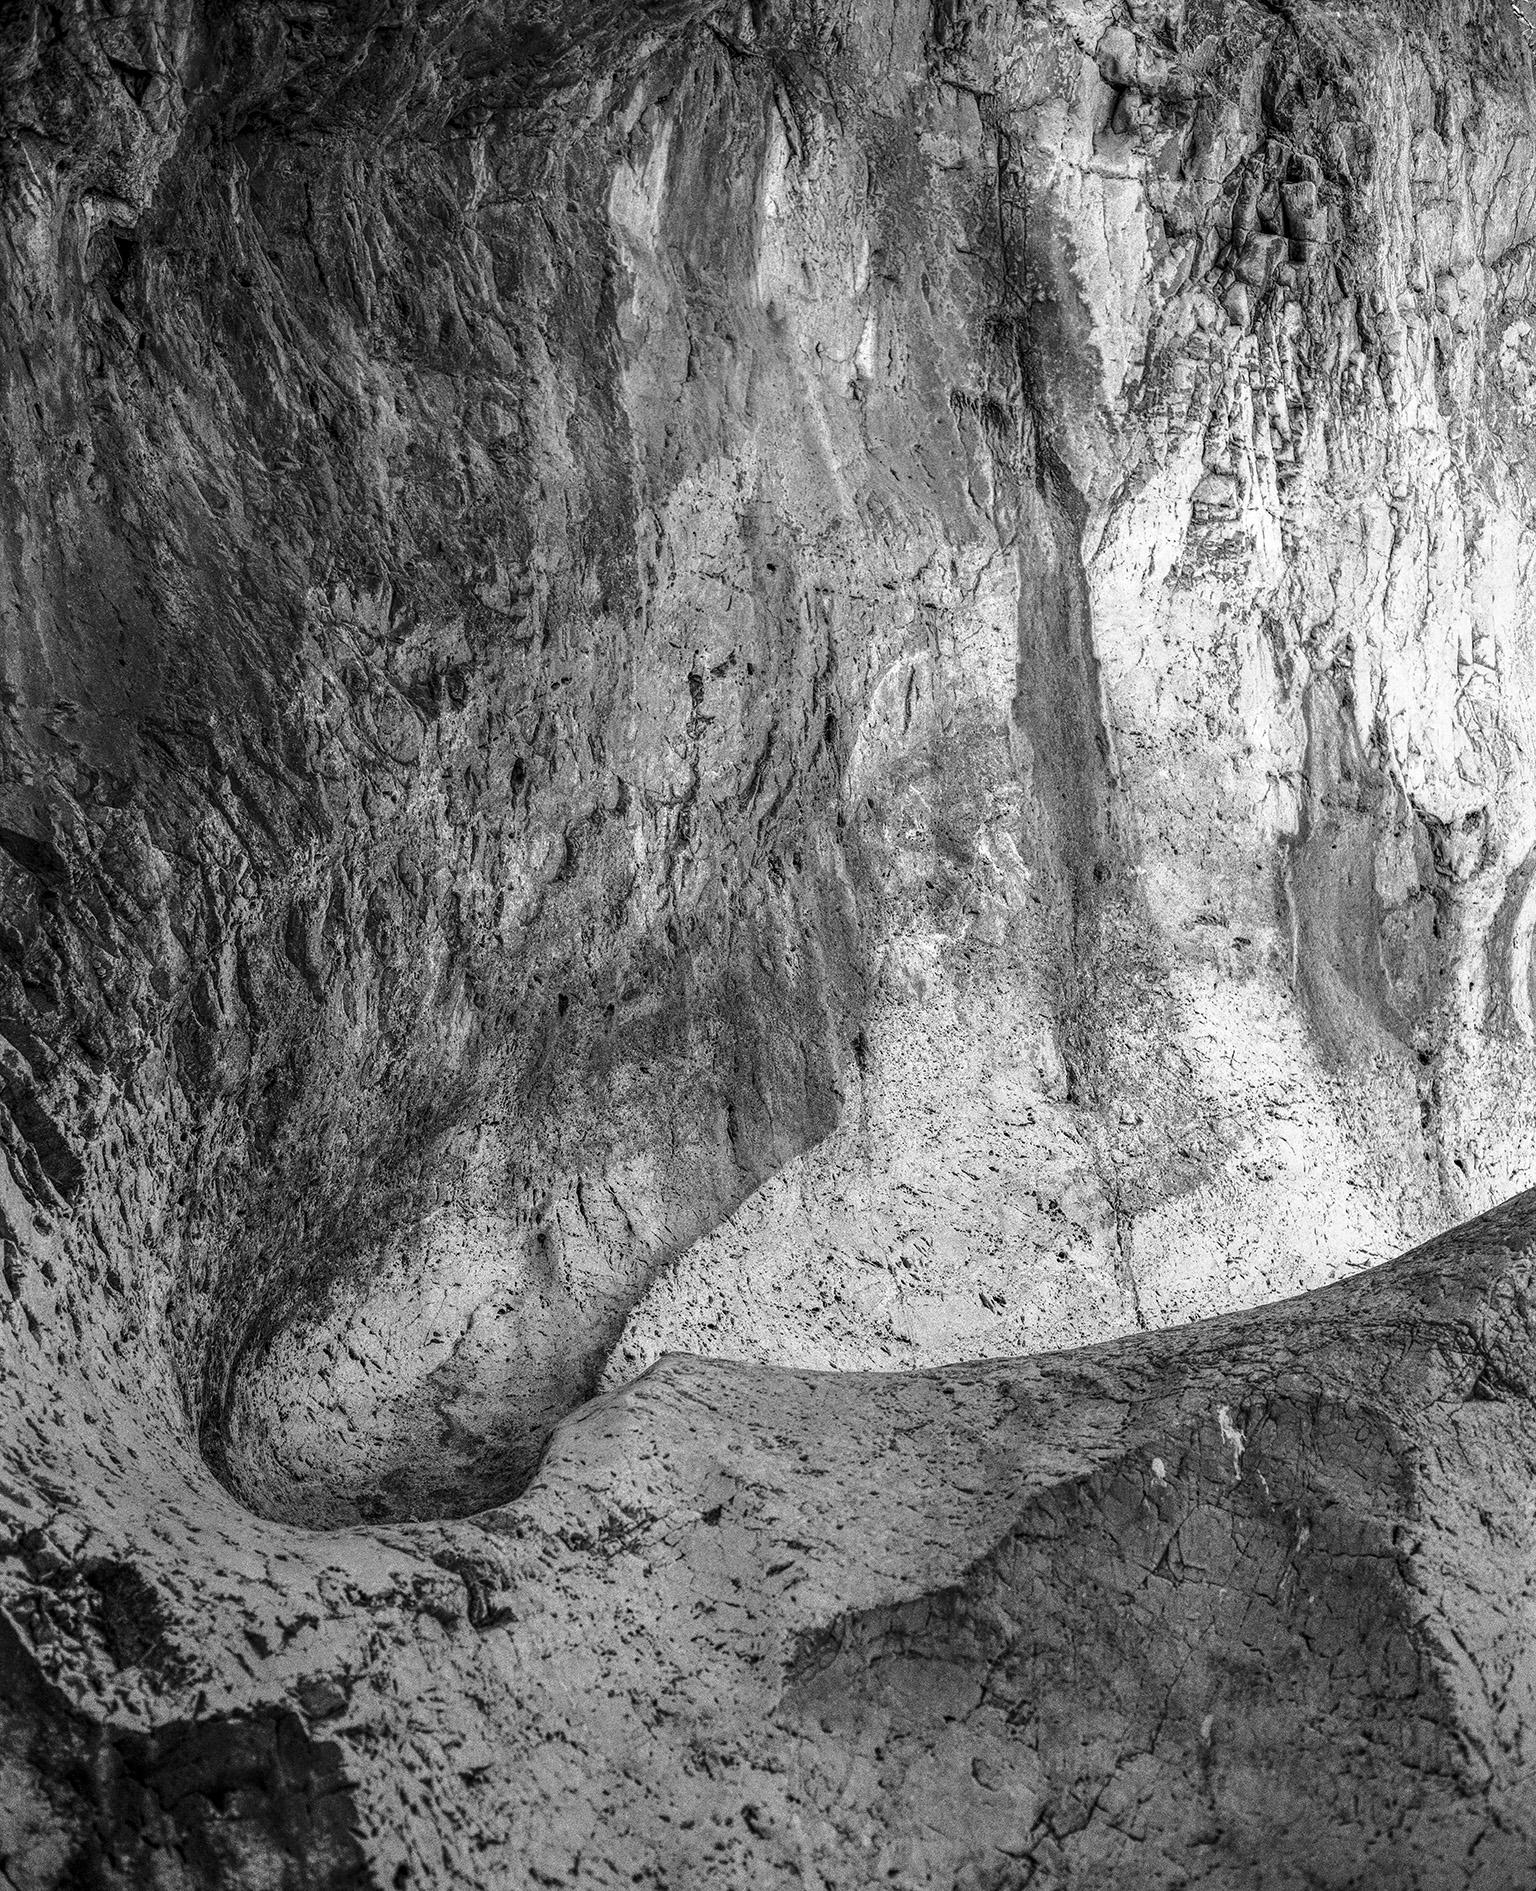 Black and White Photograph John Stathatos - Terre VII - Photographie en noir et blanc, grotte, rochers, paysage naturel, géologie